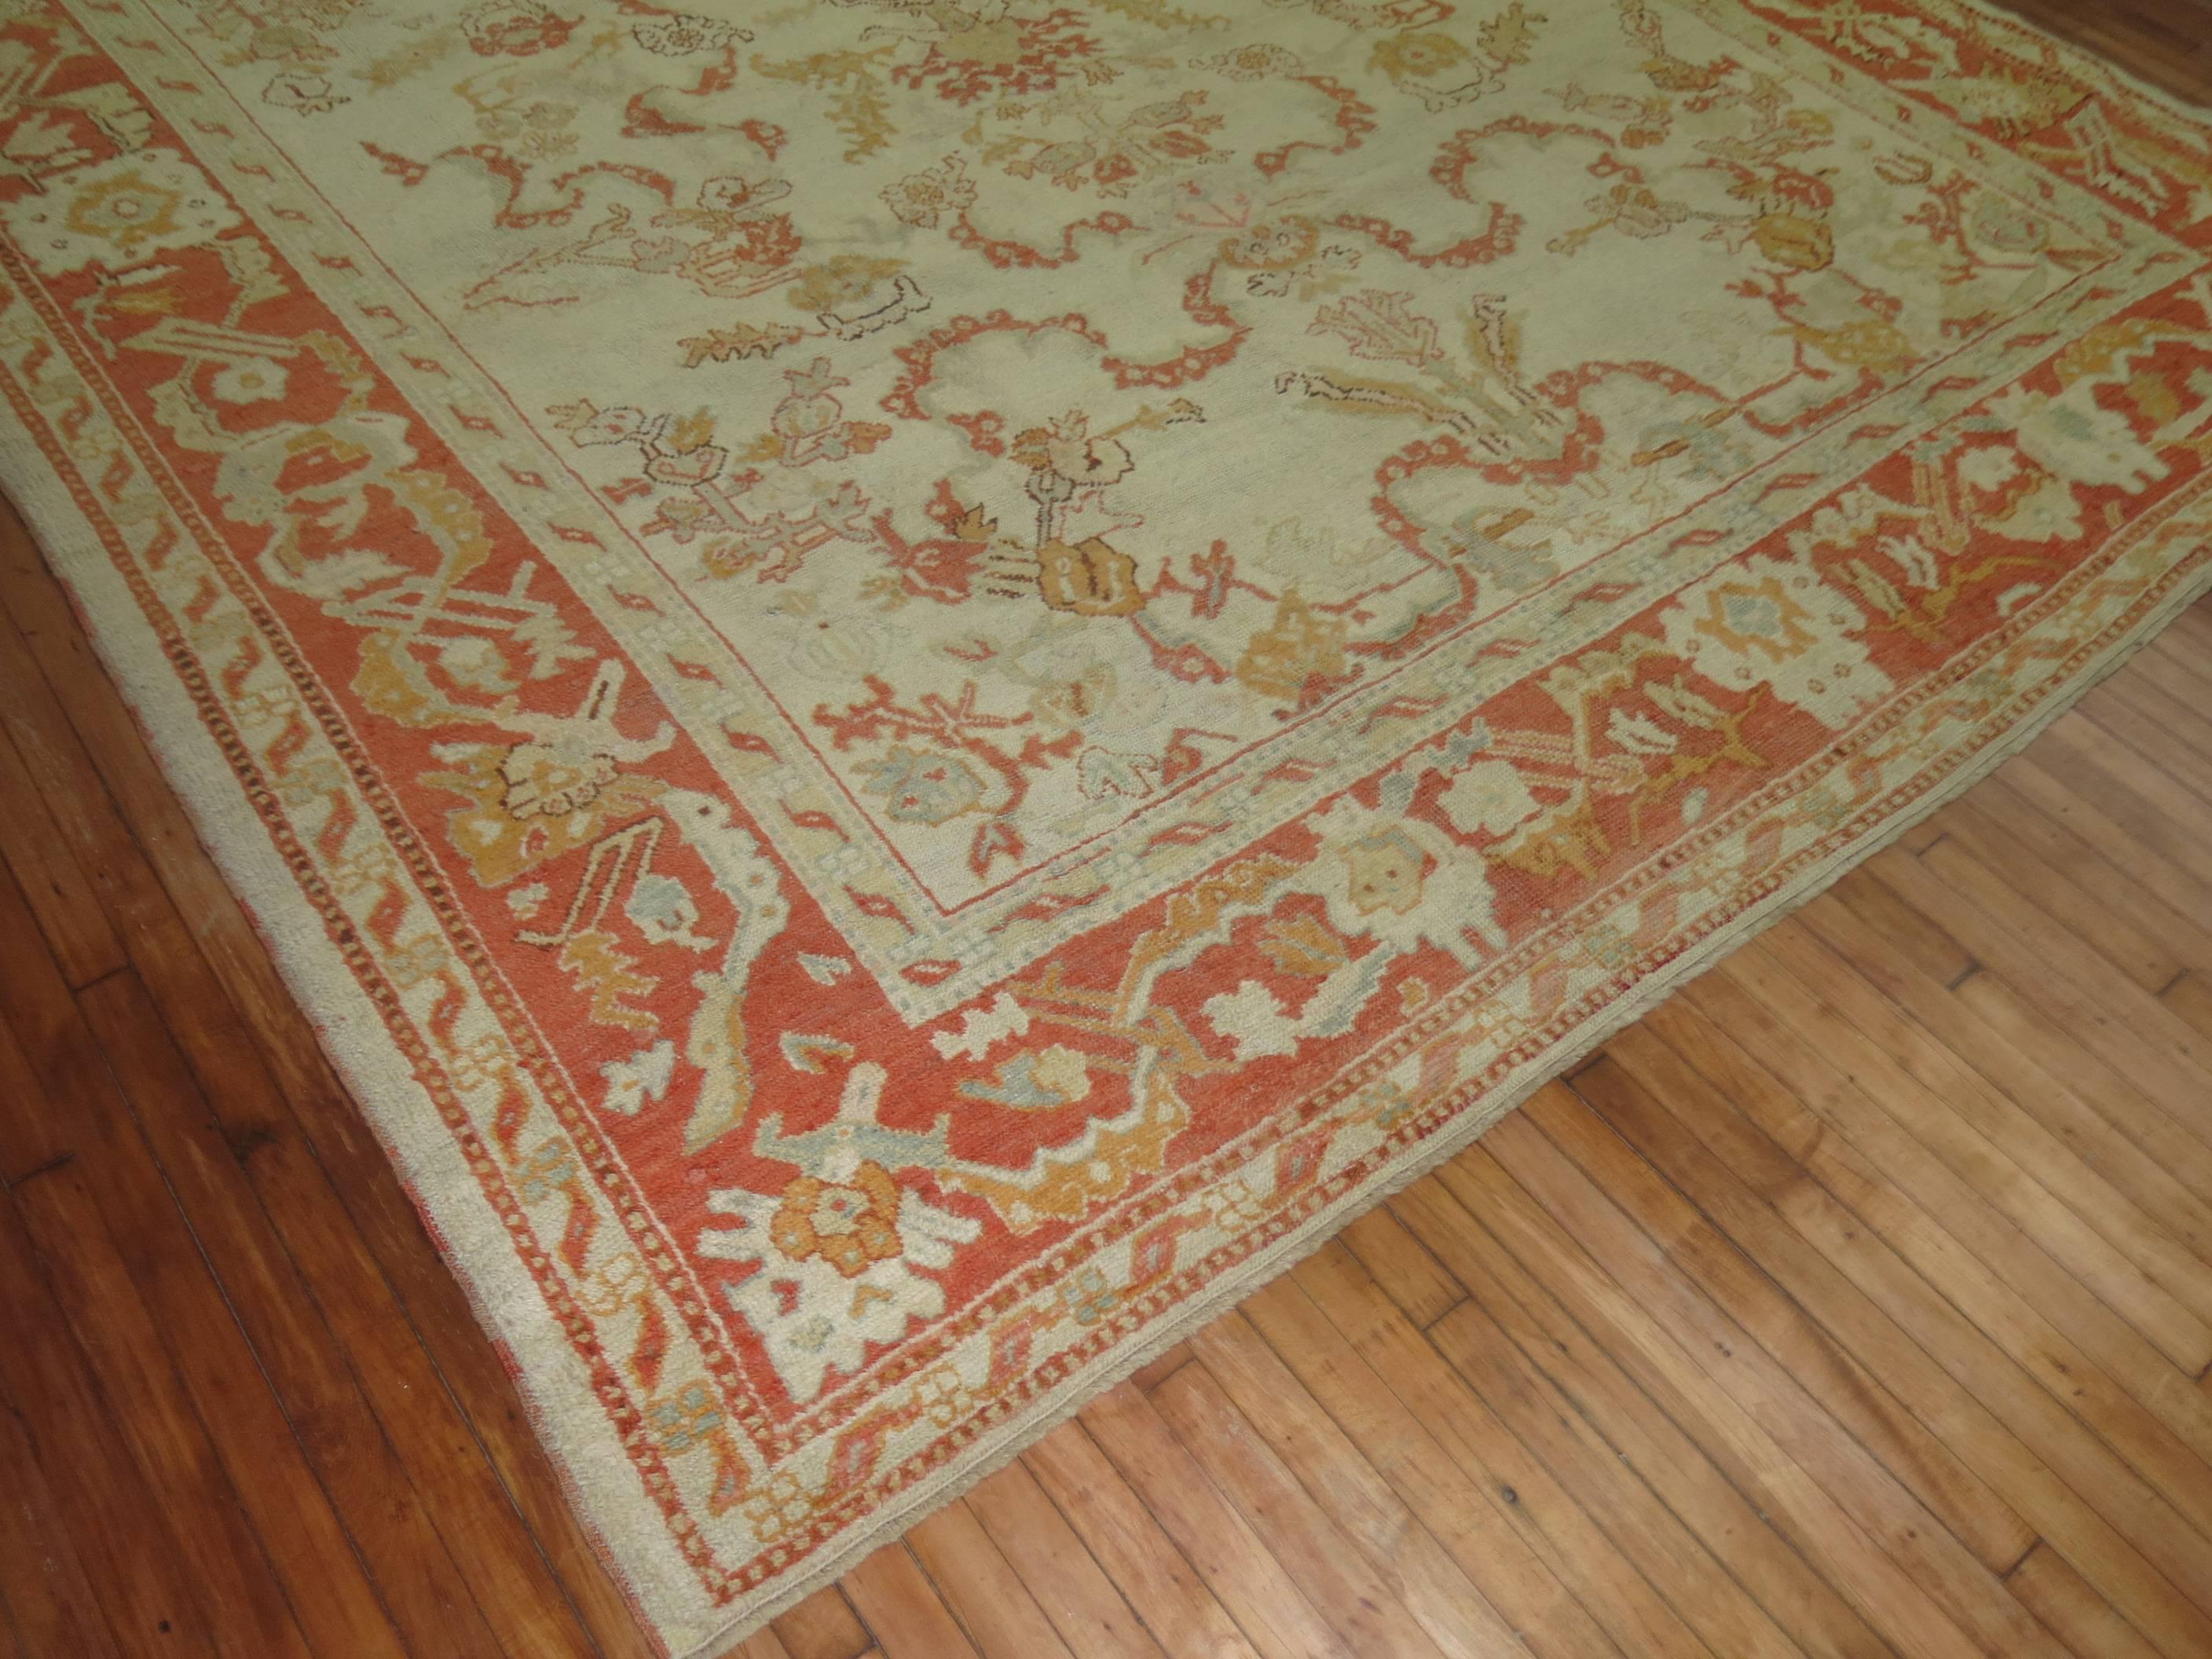 20th Century Ivory Orange Antique Turkish Oushak Room Size Carpet For Sale